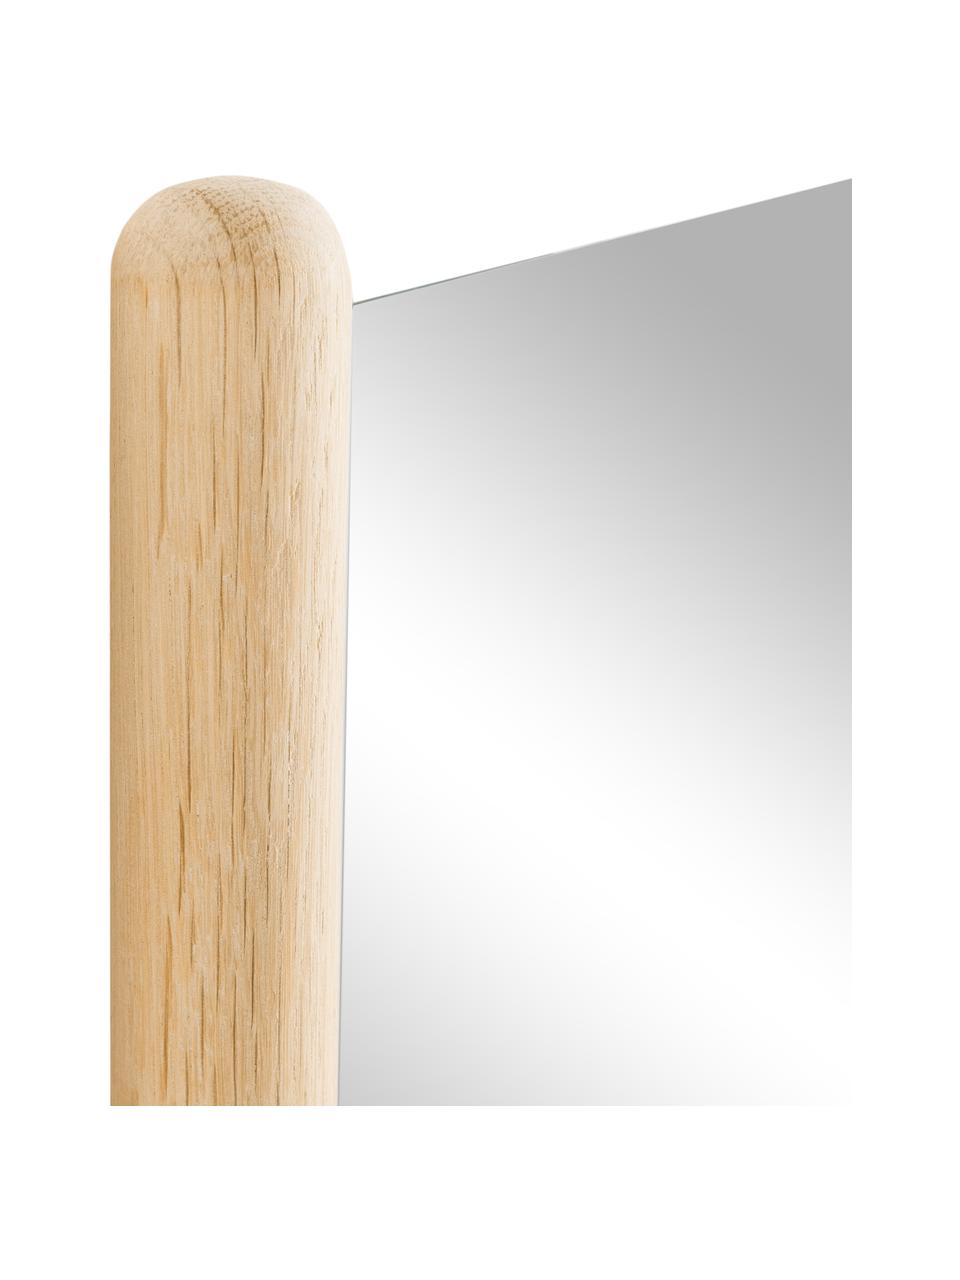 Eckiger Anlehnspiegel Natane mit hellem Holzrahmen, Rahmen: Birkenholz, Rückseite: Mitteldichte Holzfaserpla, Spiegelfläche: Spiegelglas, Hellbraun, B 54 x H 160 cm